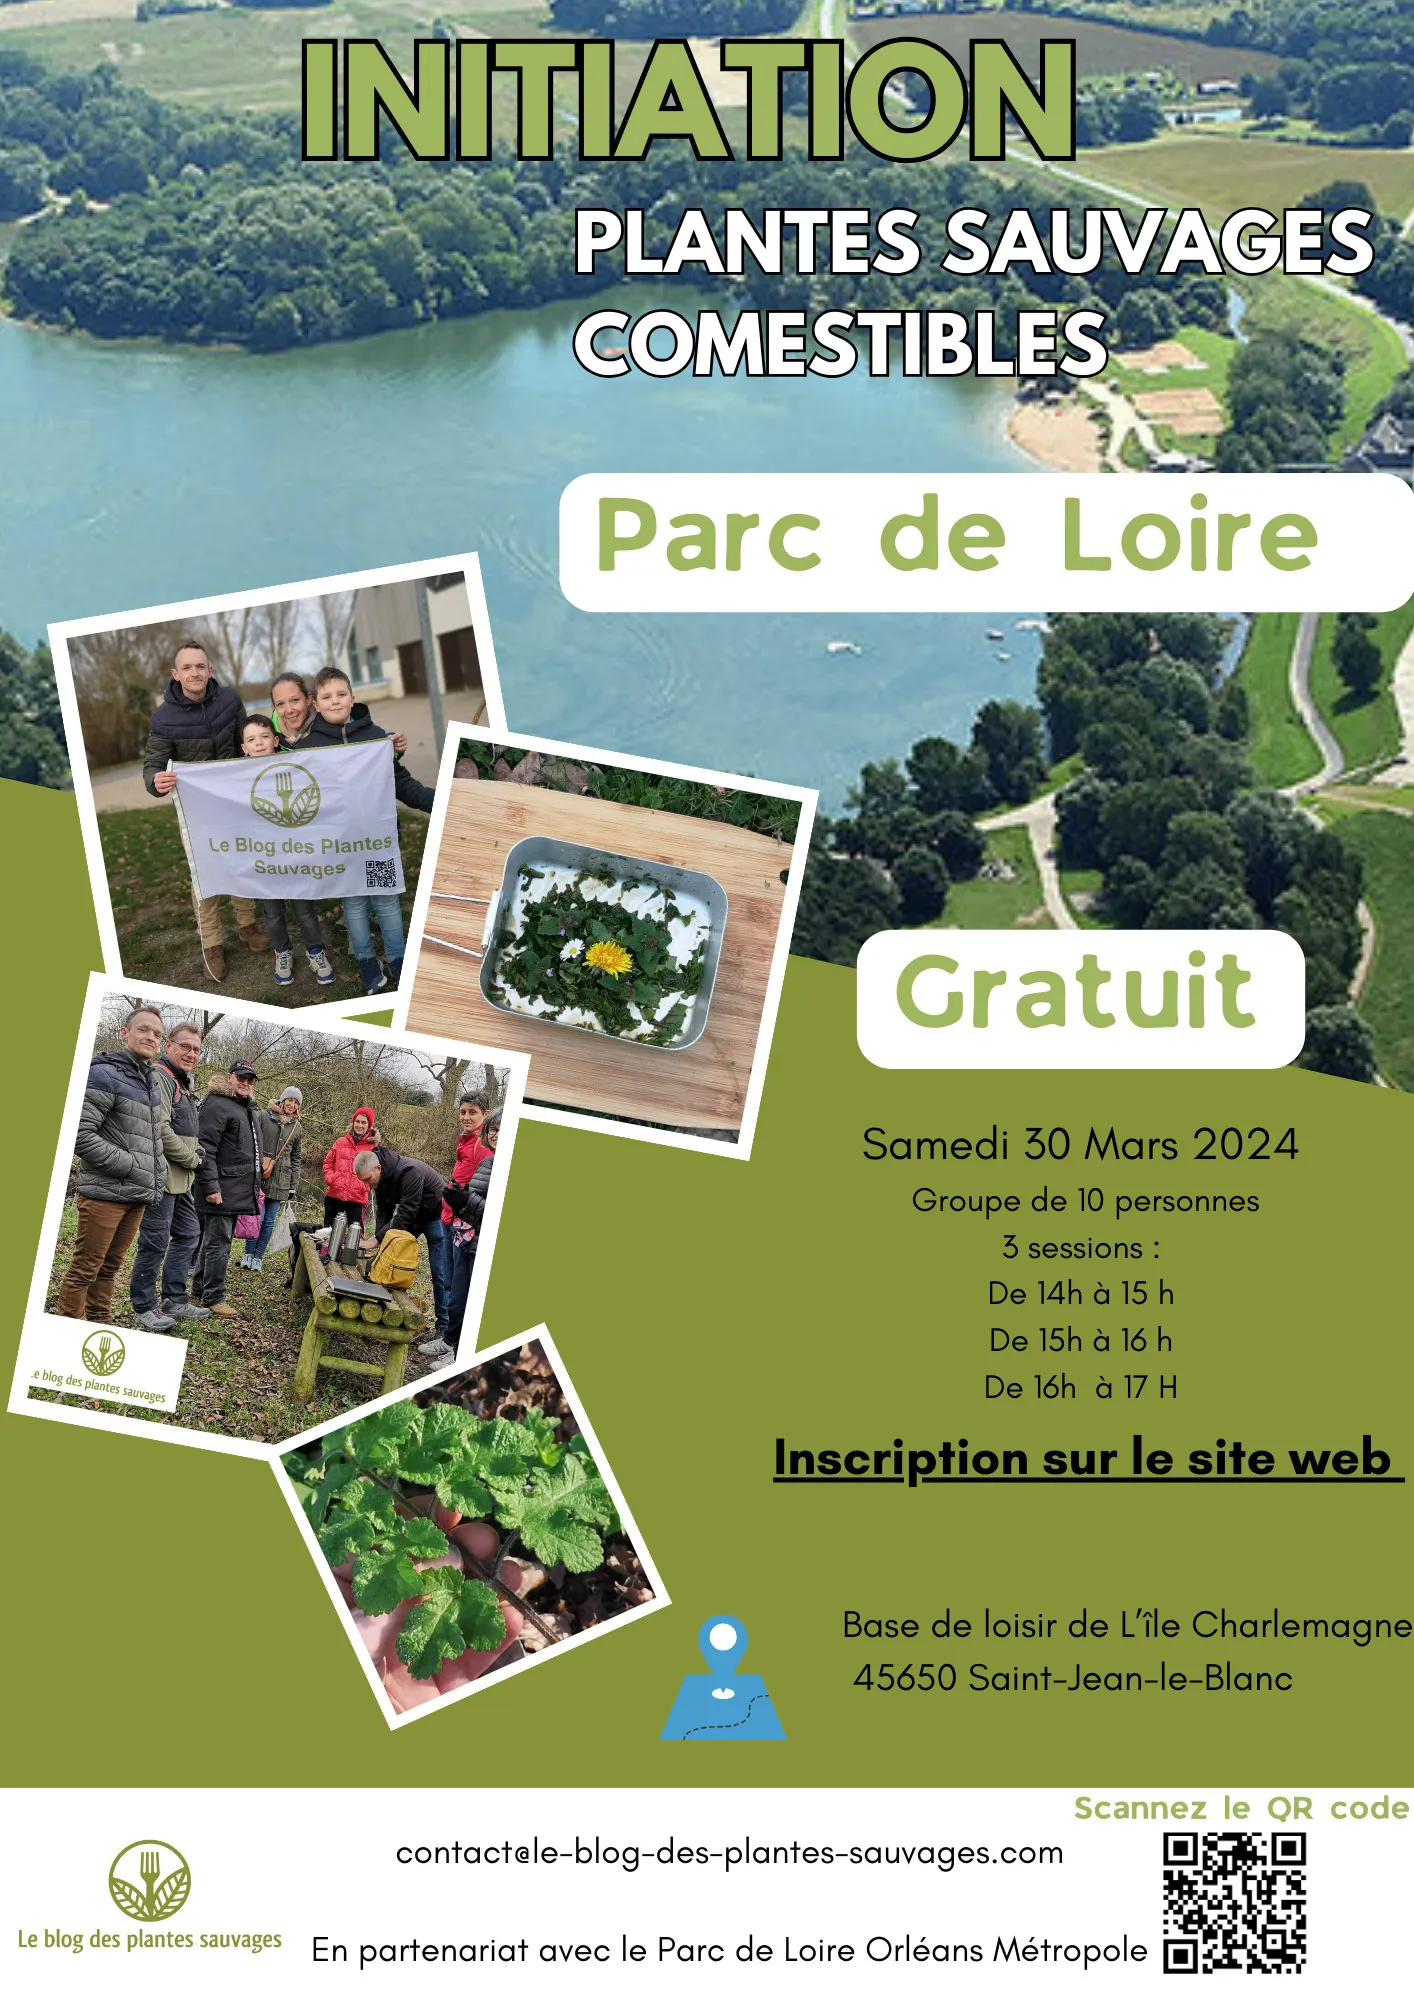 Image qui illustre: Initiation Plantes sauvages comestibles Parc de Loire à Saint-Jean-le-Blanc - 0